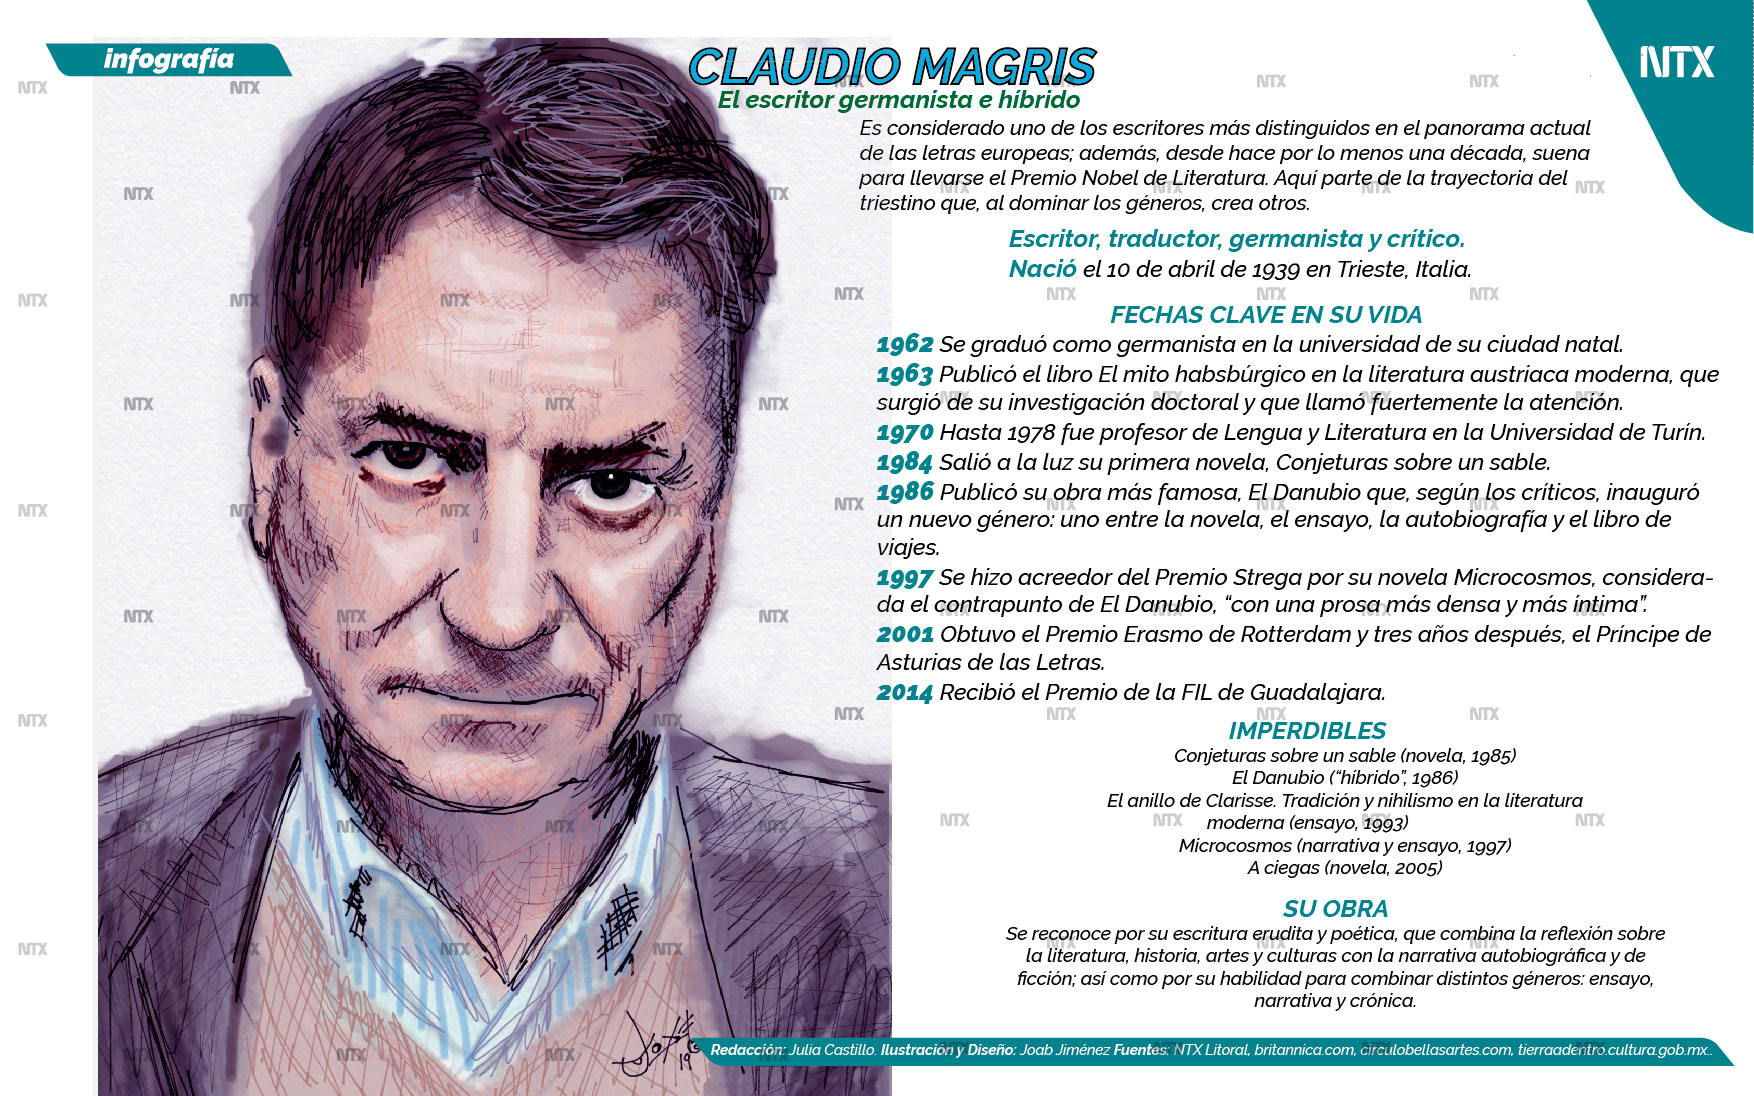 Claudio Magris, el escritor germanista e hbrido